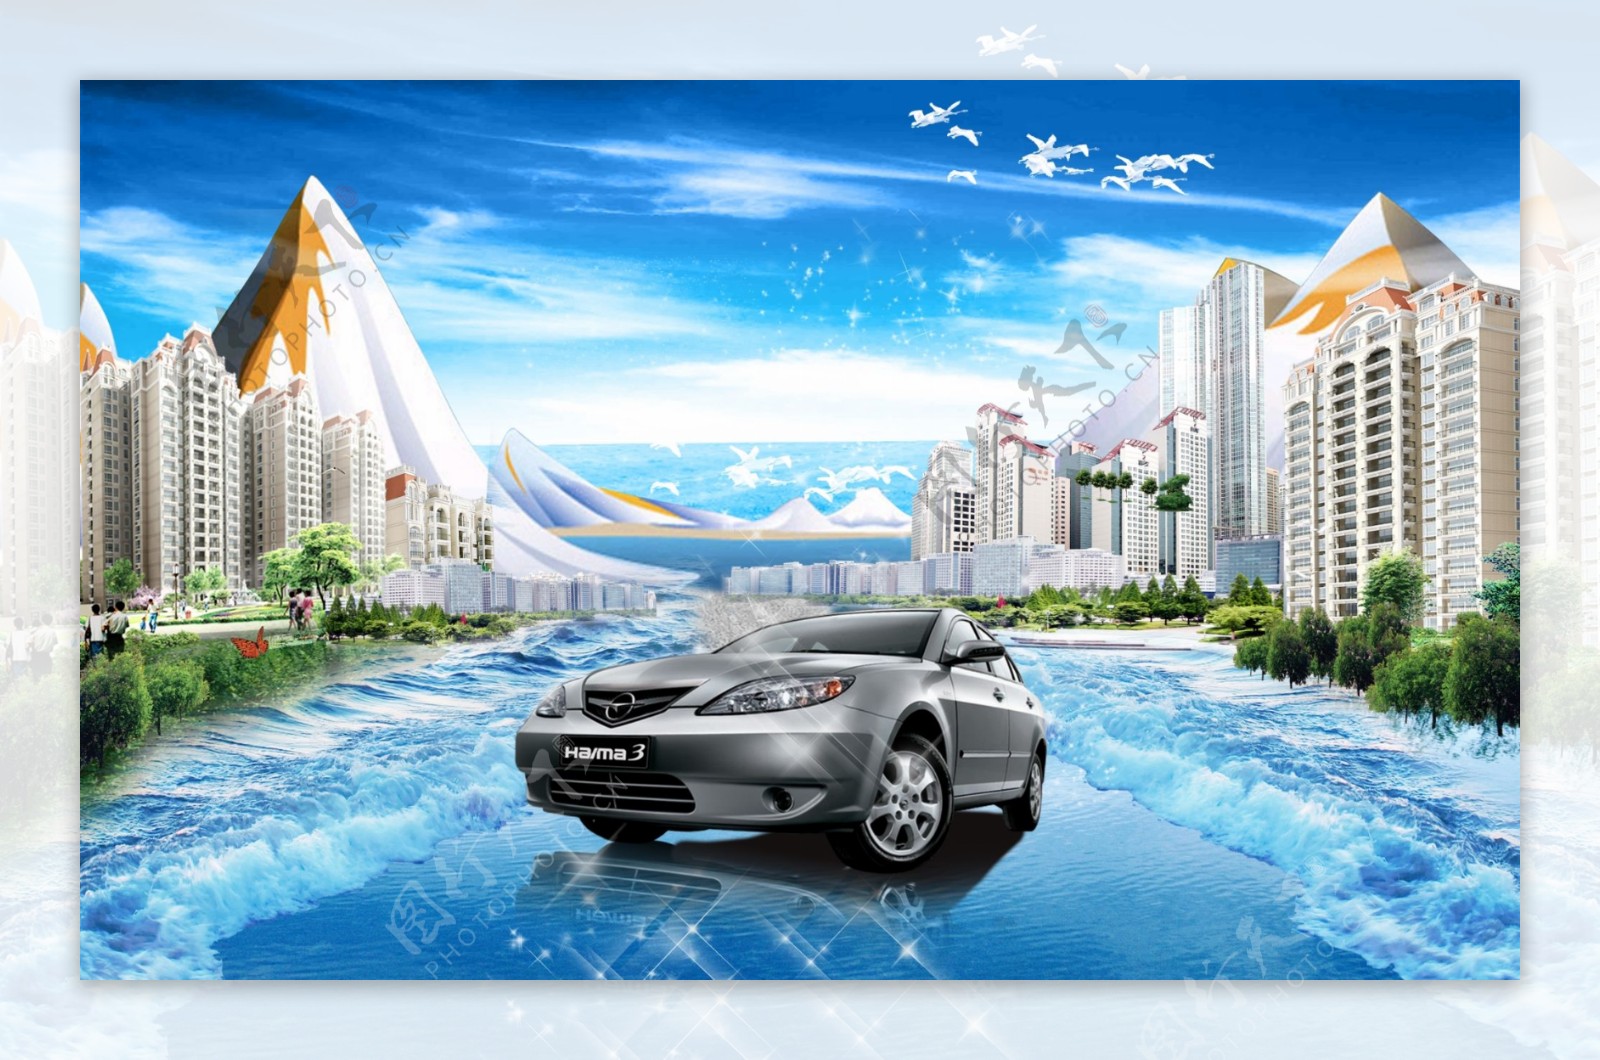 水上世界汽车广告楼房高楼大厦水上世界汽车广告海浪广告设计模板海报设计源文件库300DPIPSD47242953